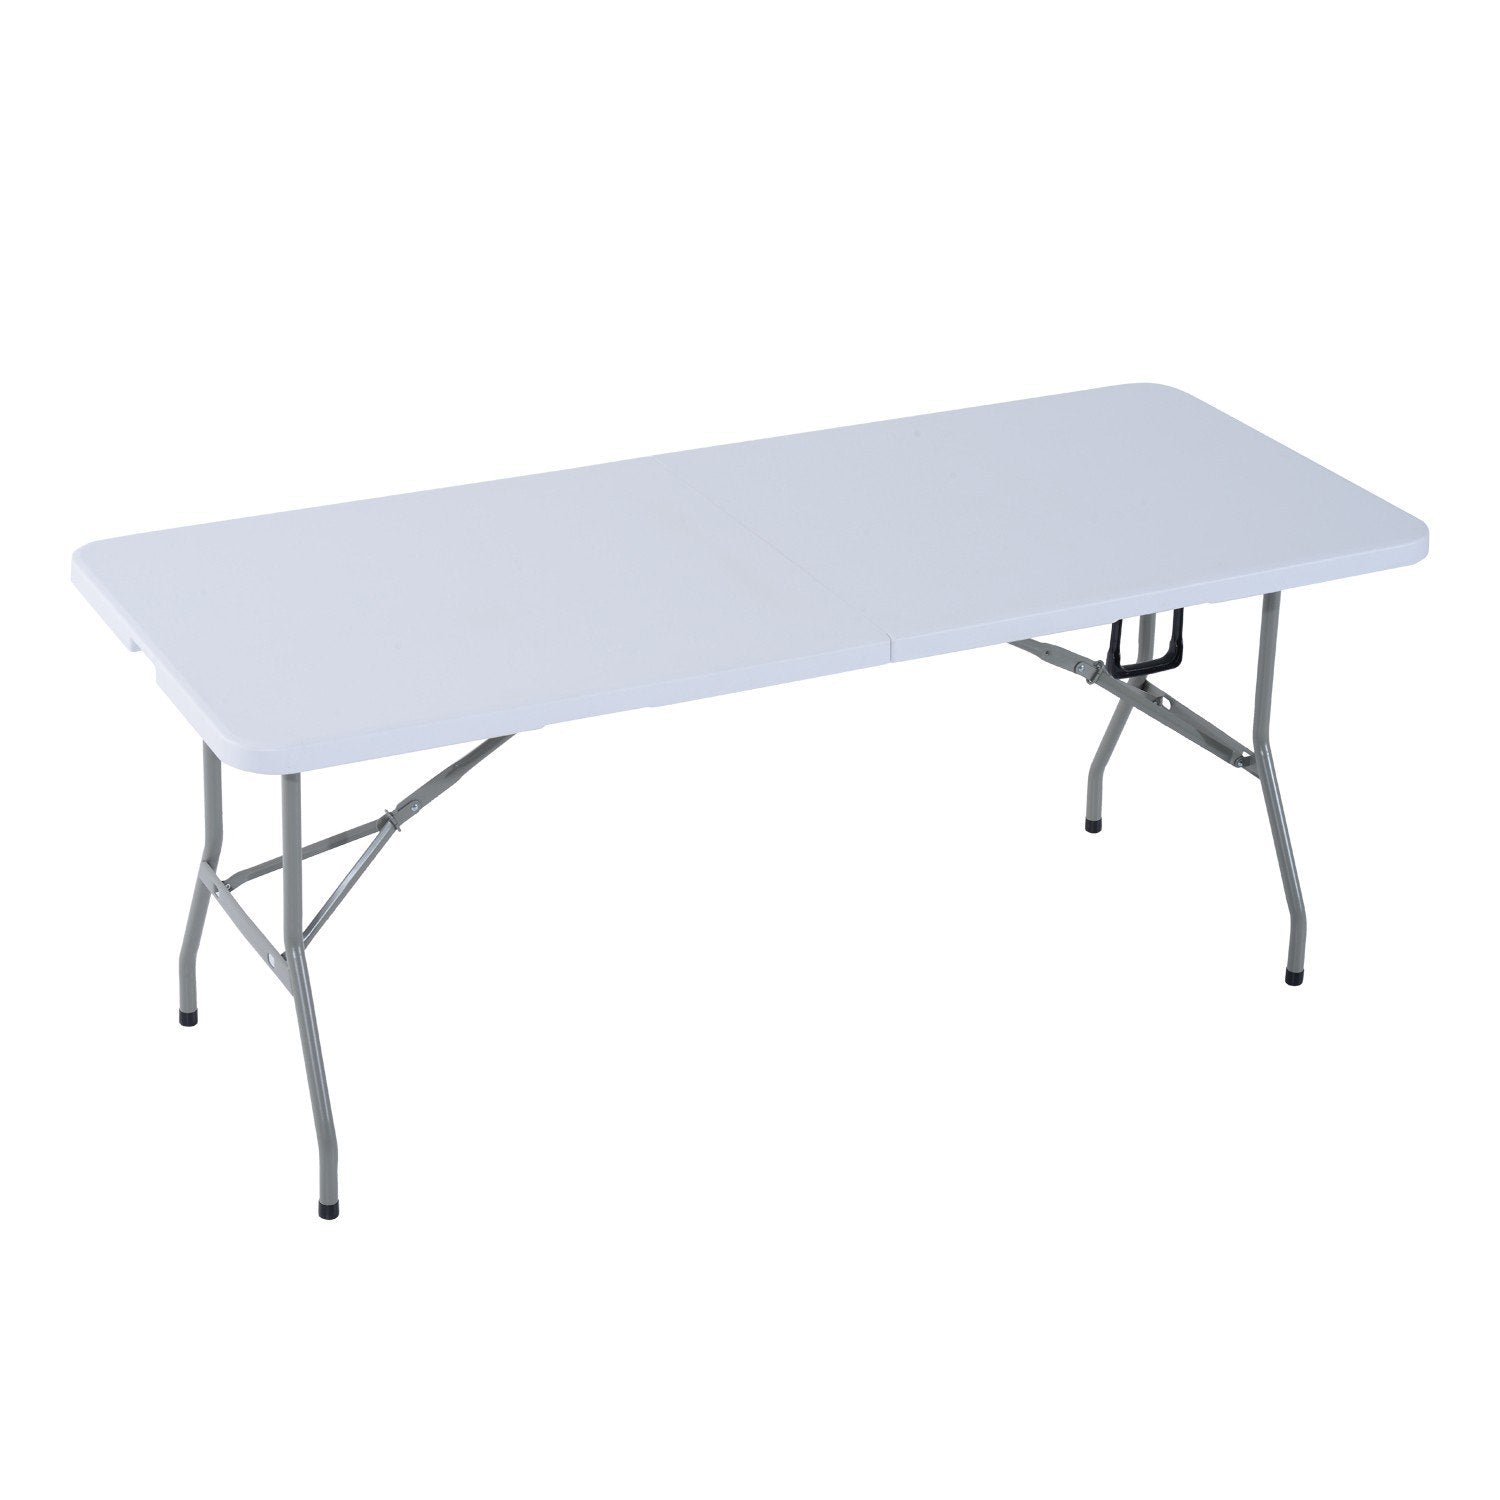 immagine-1-unipam-tavolo-metallo-pieghevole-bianco-180x75x74cm-ean-9972016602008